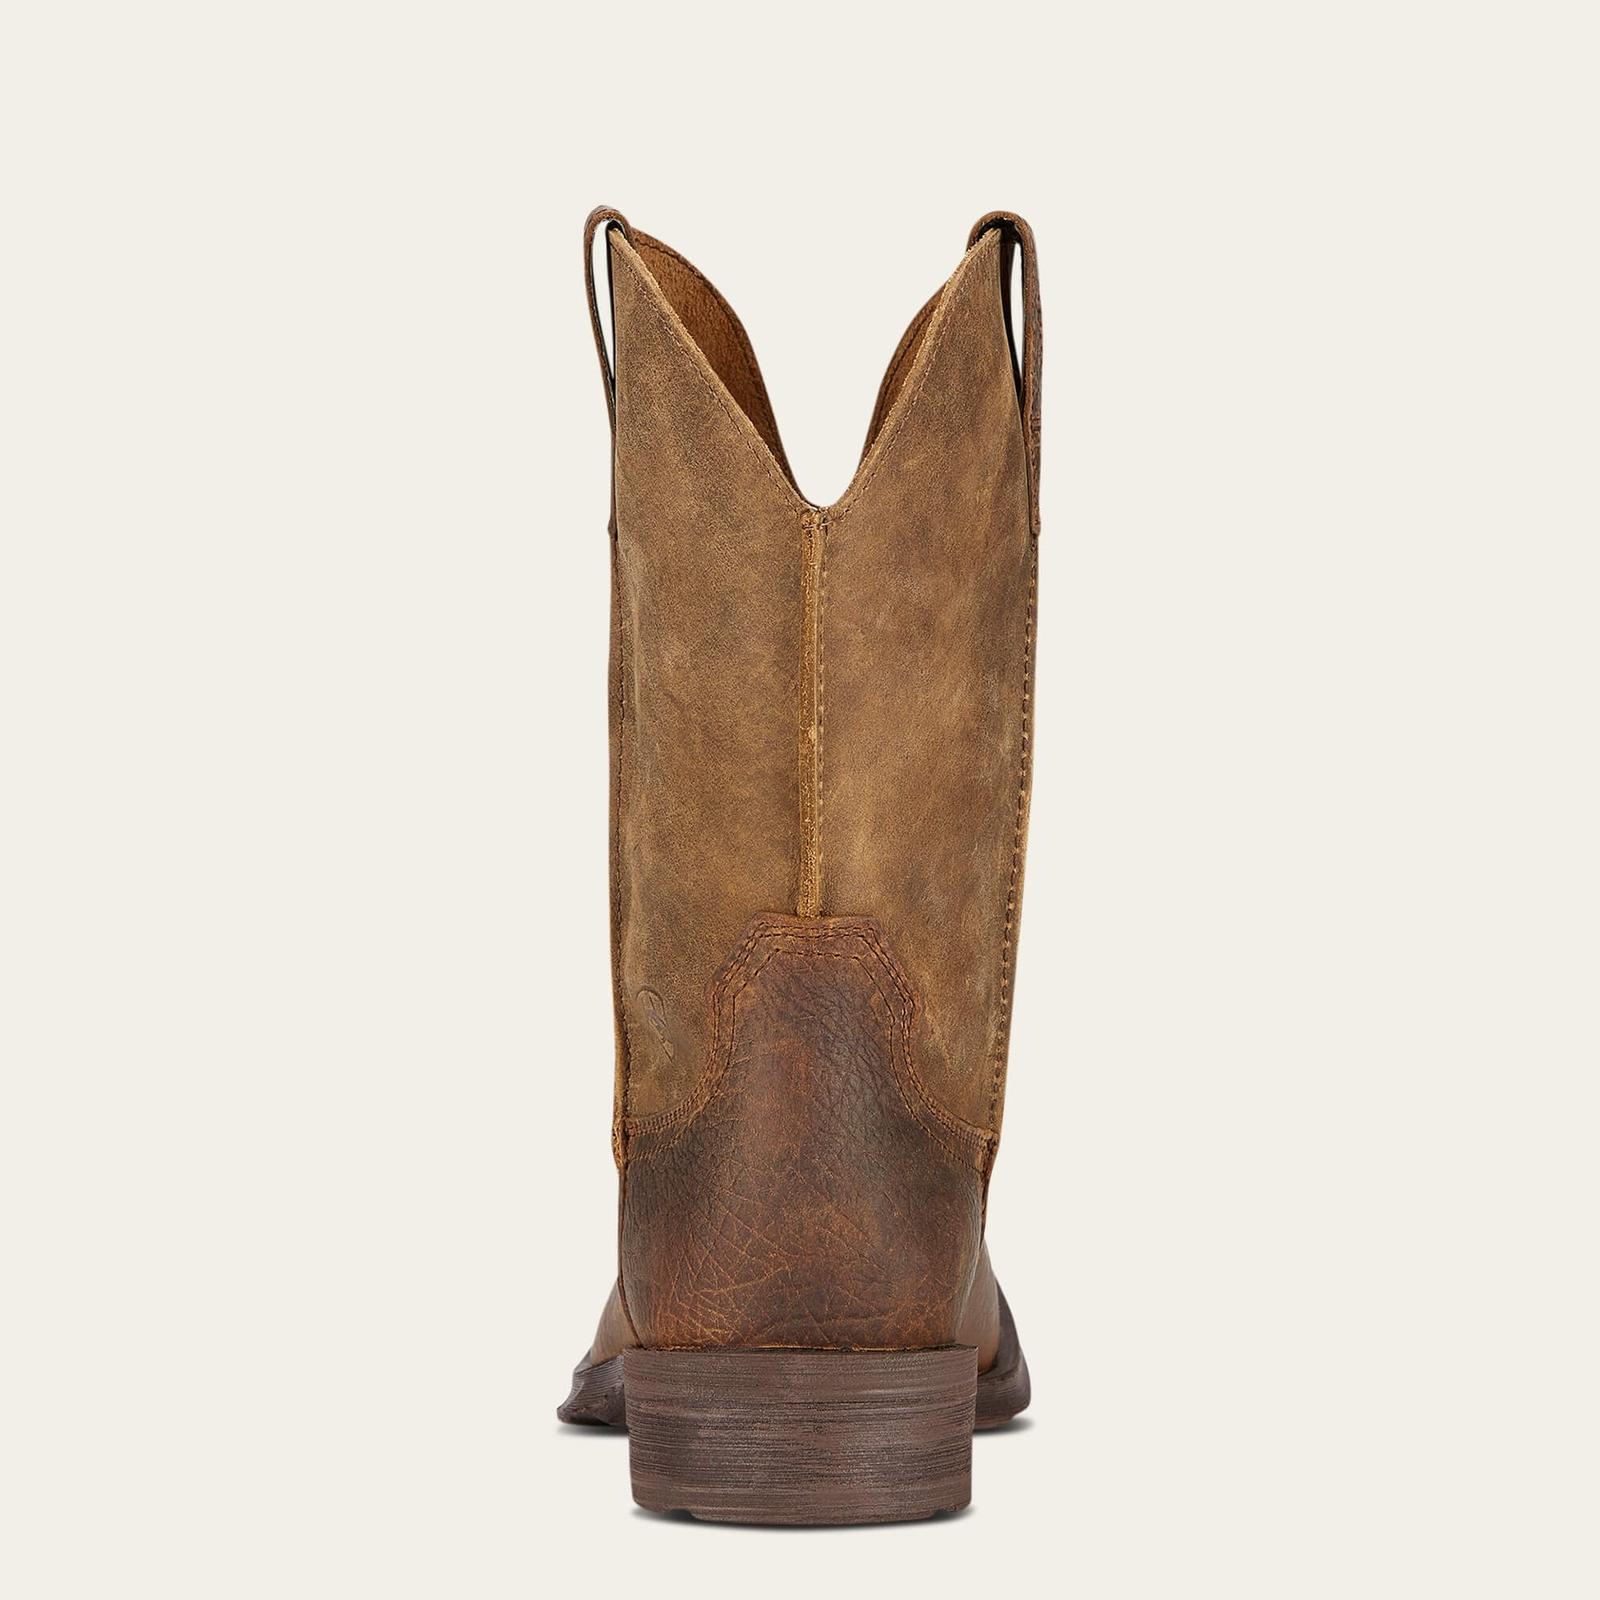 Ariat Men's Rambler Western Boot